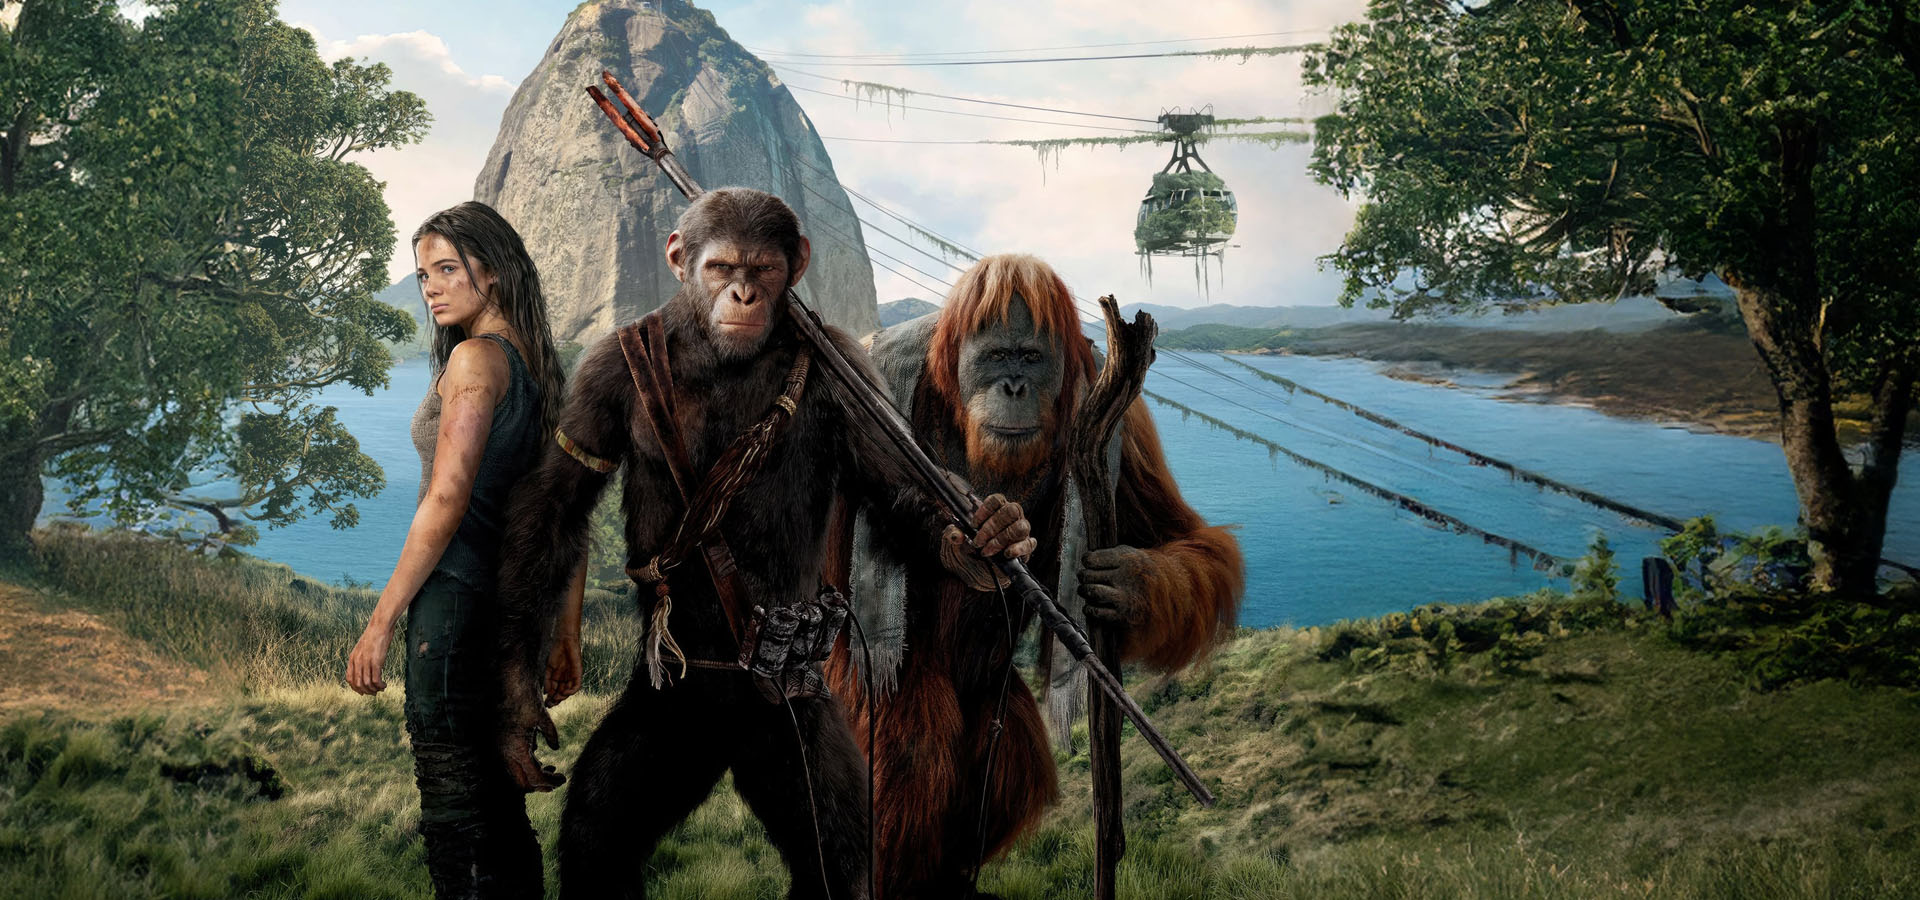 دانلود فیلم Kingdom of the Planet of the Apes 2024  پادشاهی سیاره میمون ها